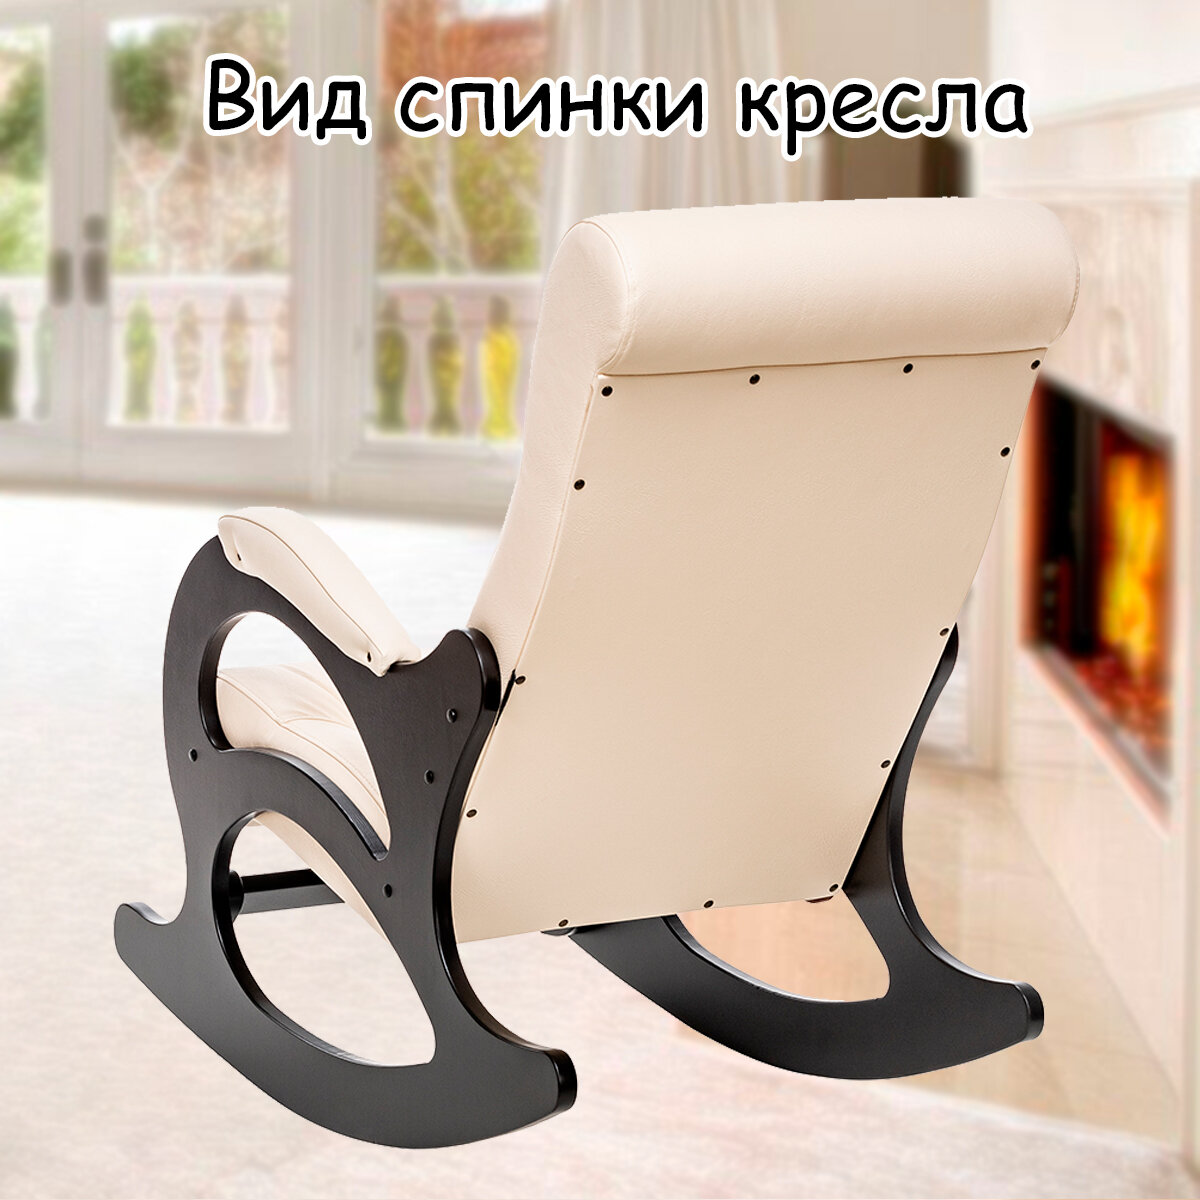 Кресло-качалка для взрослых 60х110х92 см, модель 44 (без лозы), экокожа, цвет: Dundi 112 (бежевый), каркас: Venge (черный) - фотография № 8